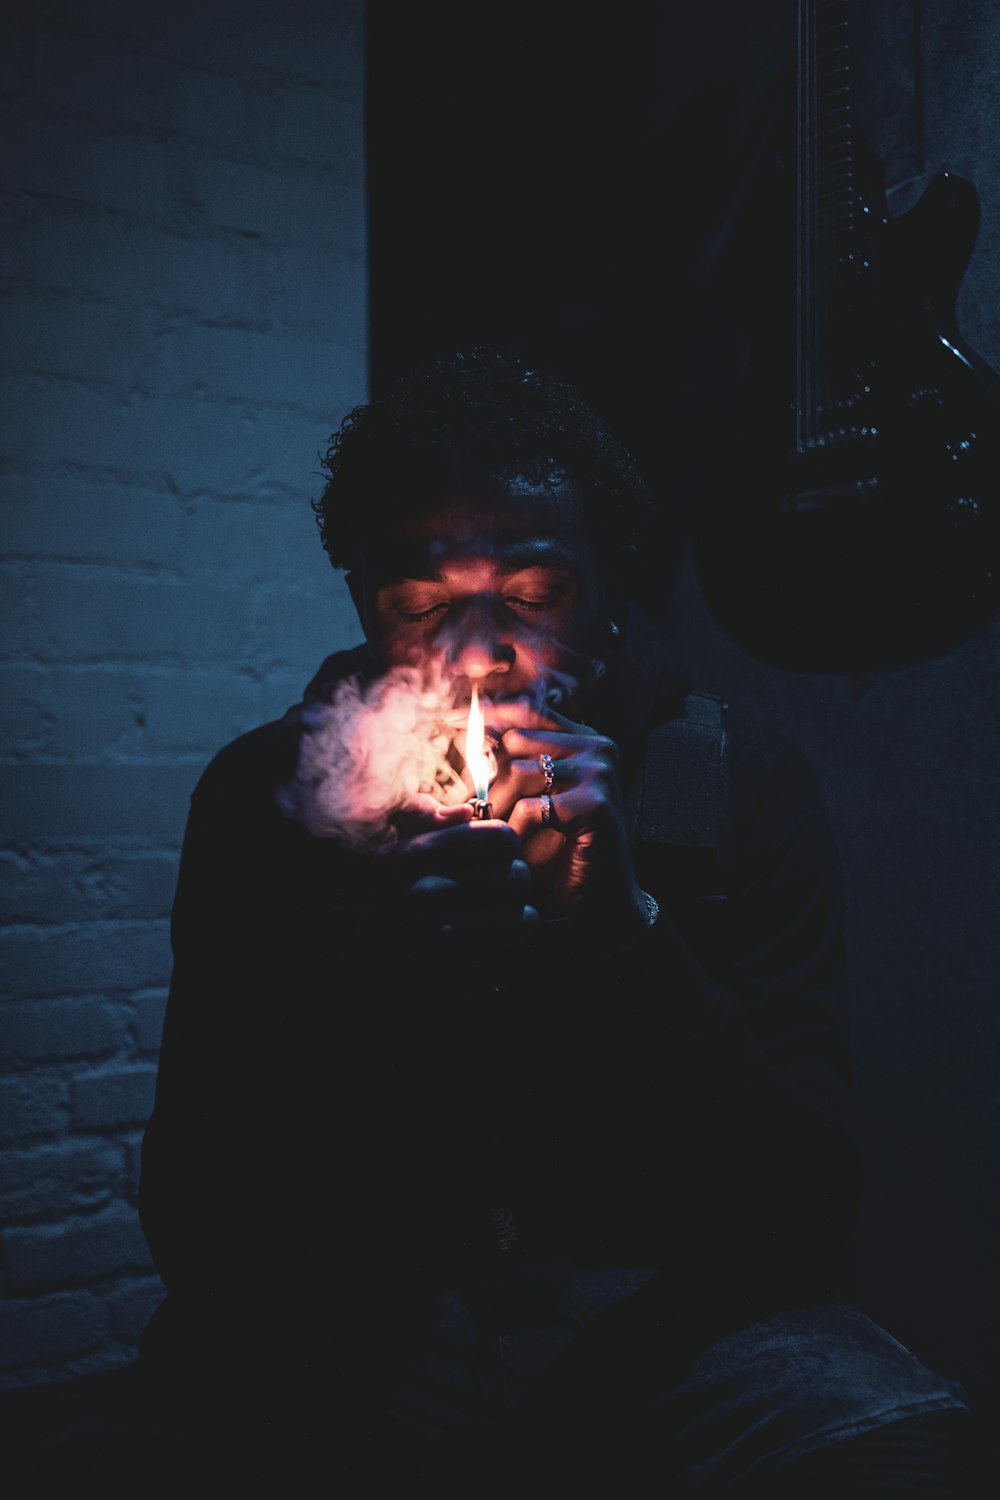 Mann raucht Zigarette in dunklem Raum